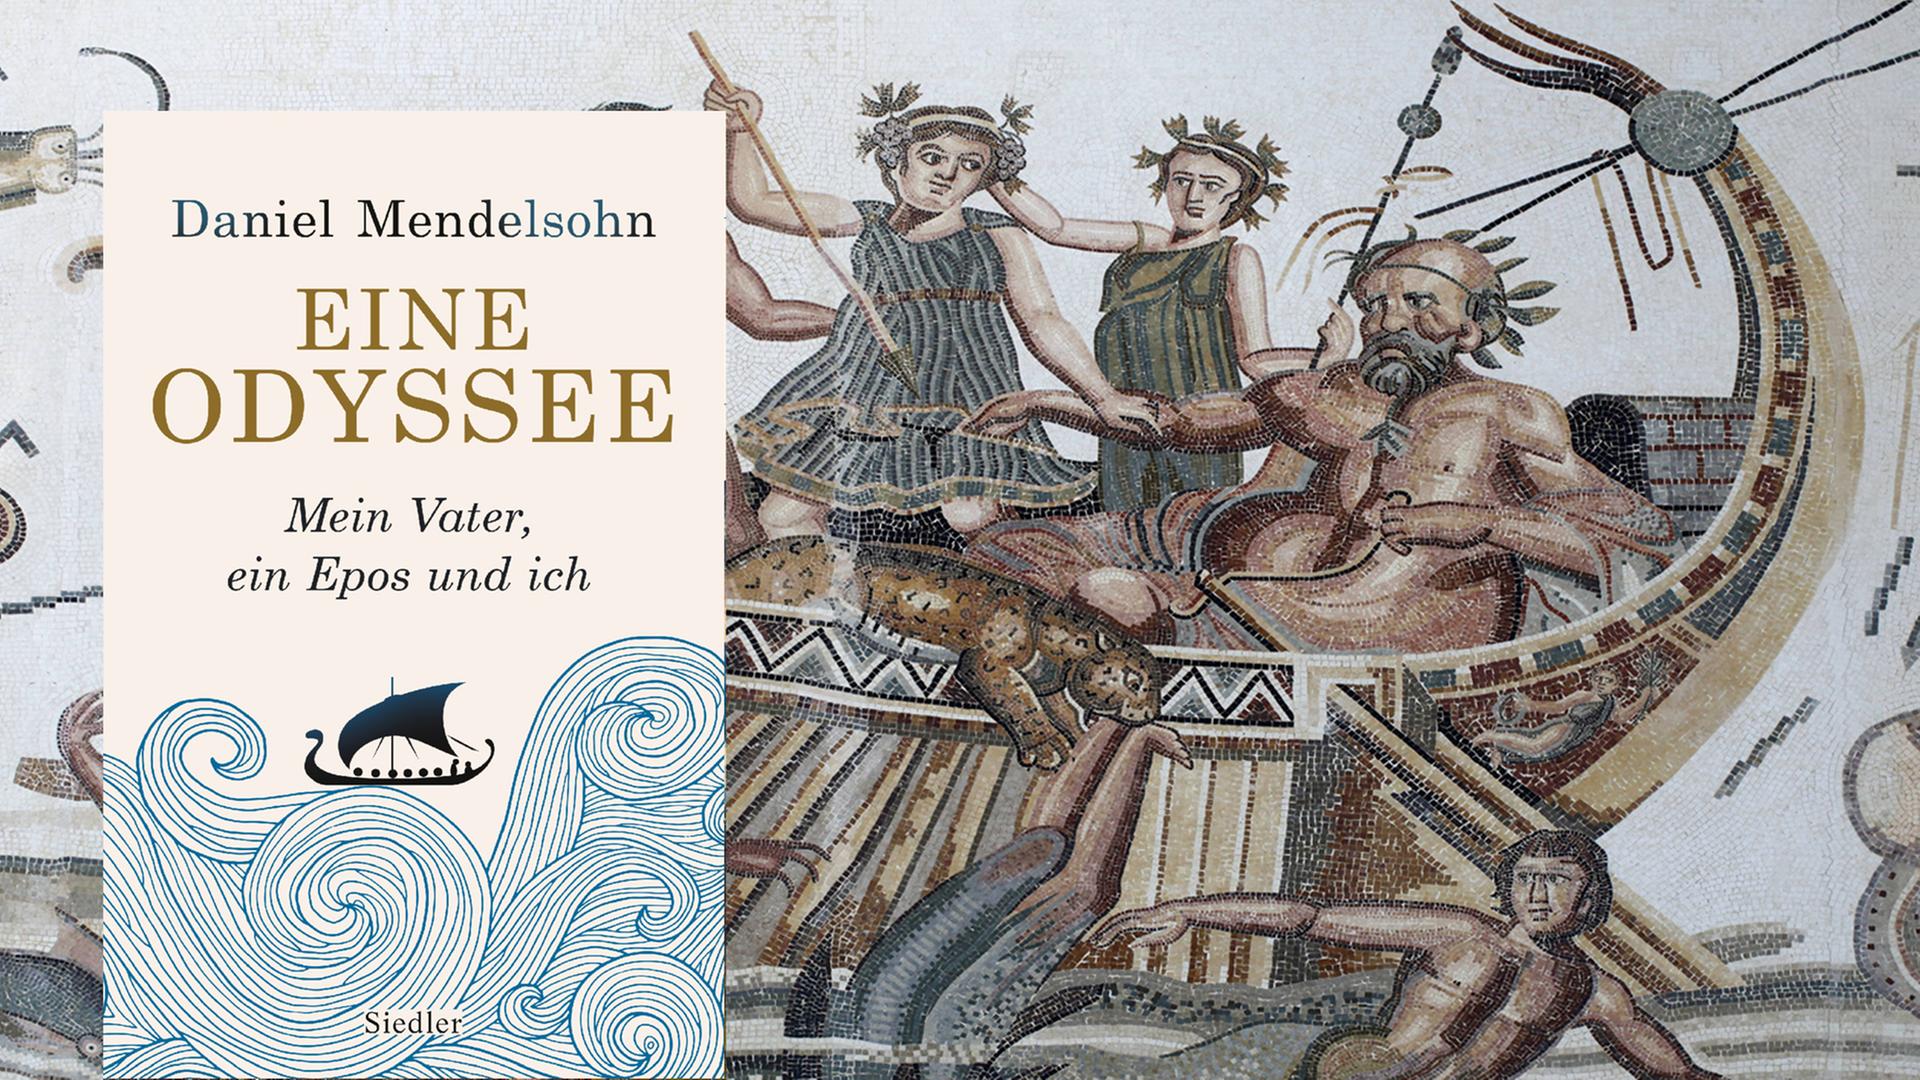 Das Cover von Mendelsohns Buch mit dem Schiff von Odysseus. Im Hintergrund befindet sich ein Bild mit einem Schiff mit Odysseus.